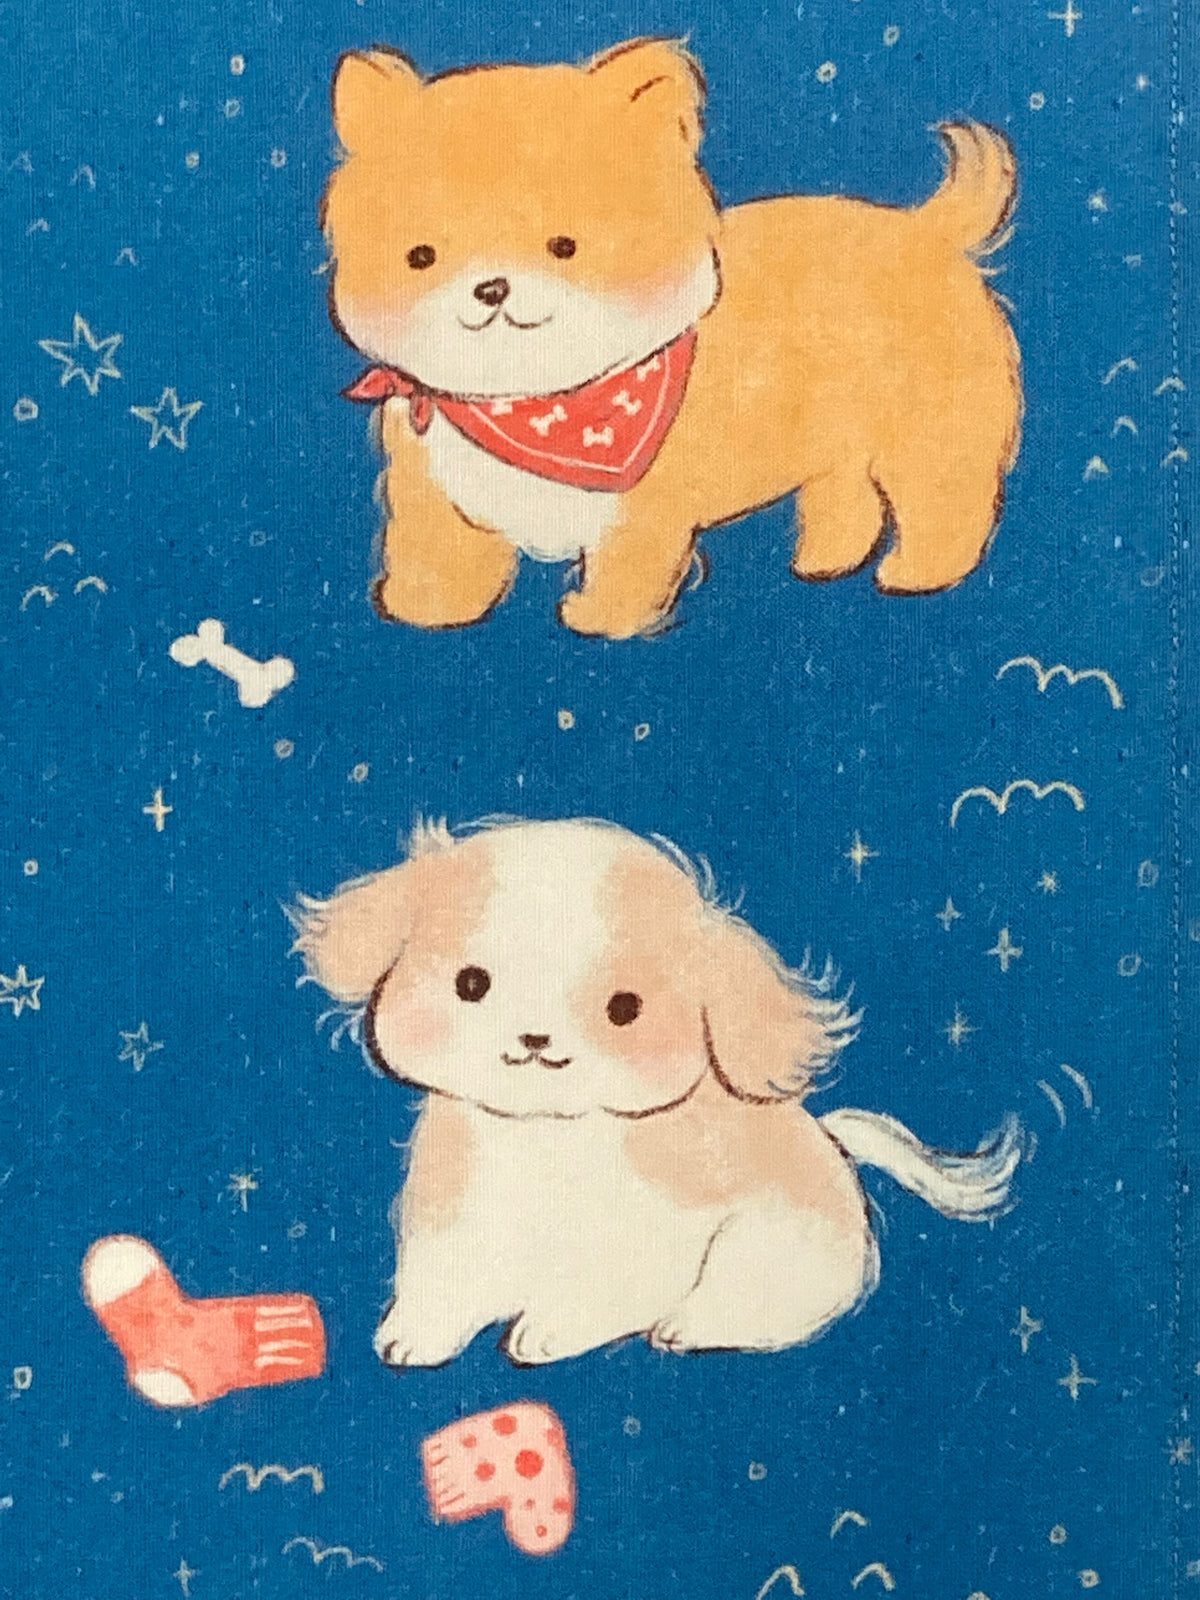 Dogs Tea Towel